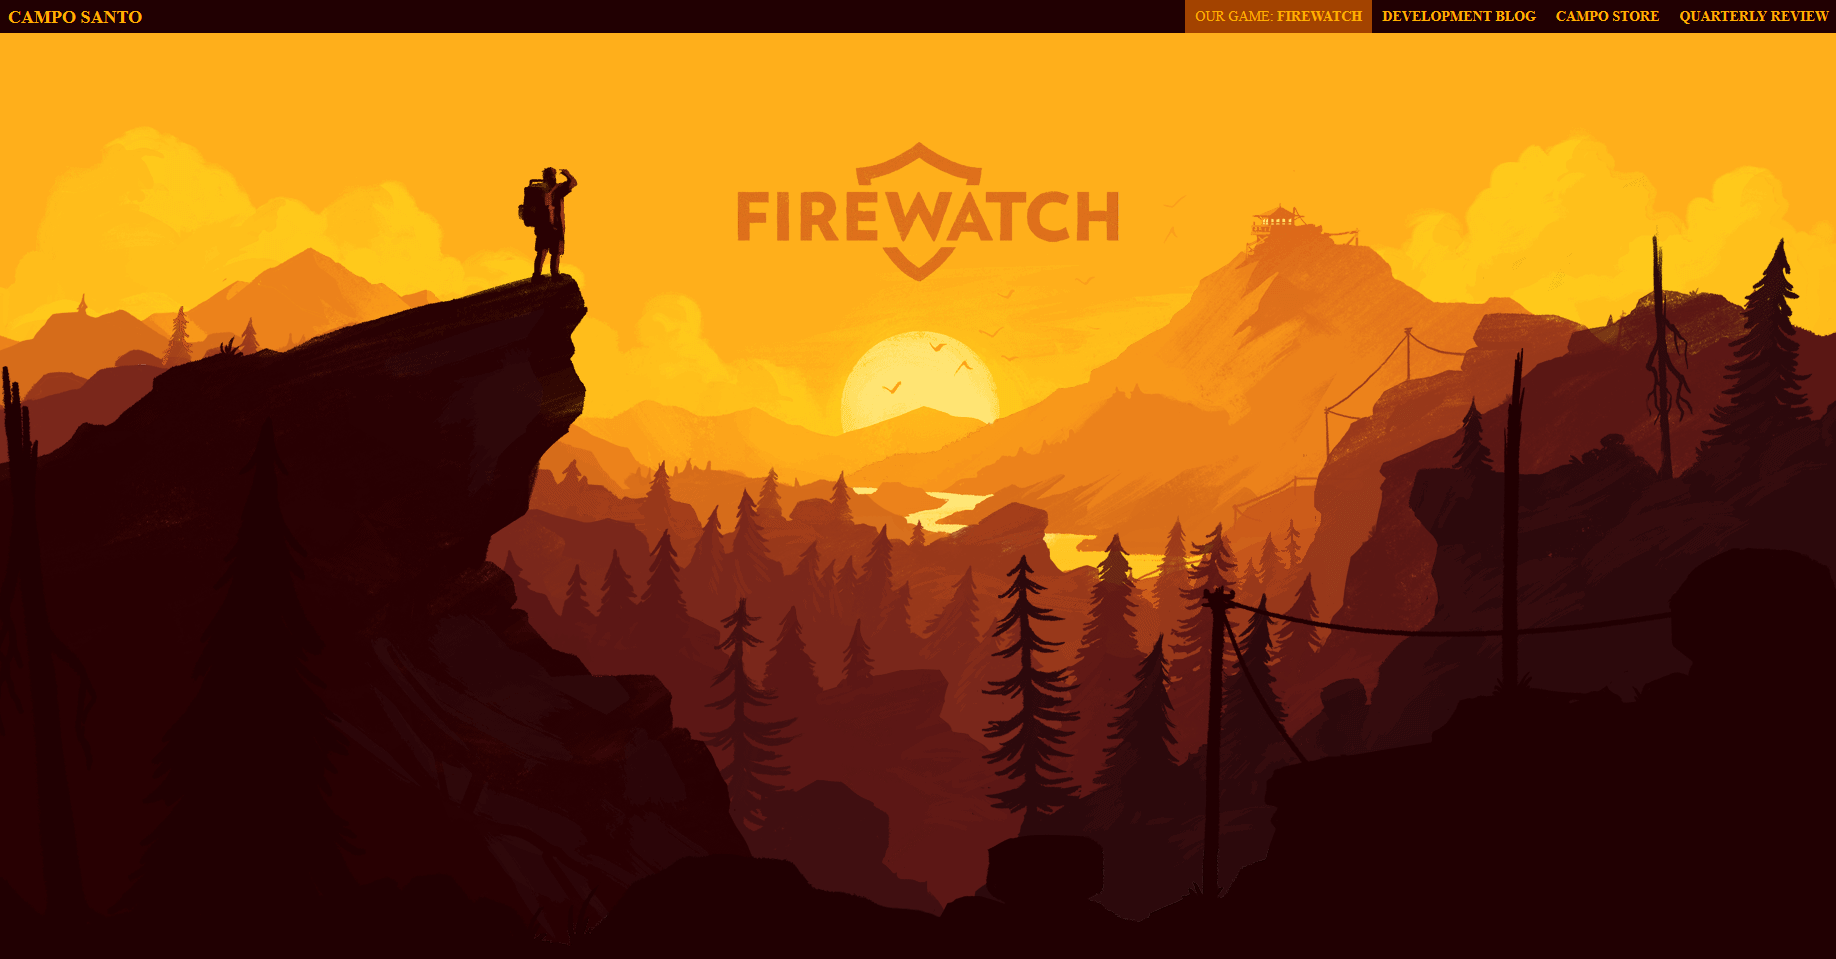 Kopfbereich der Website firewatchgame.com vor dem Scrollen